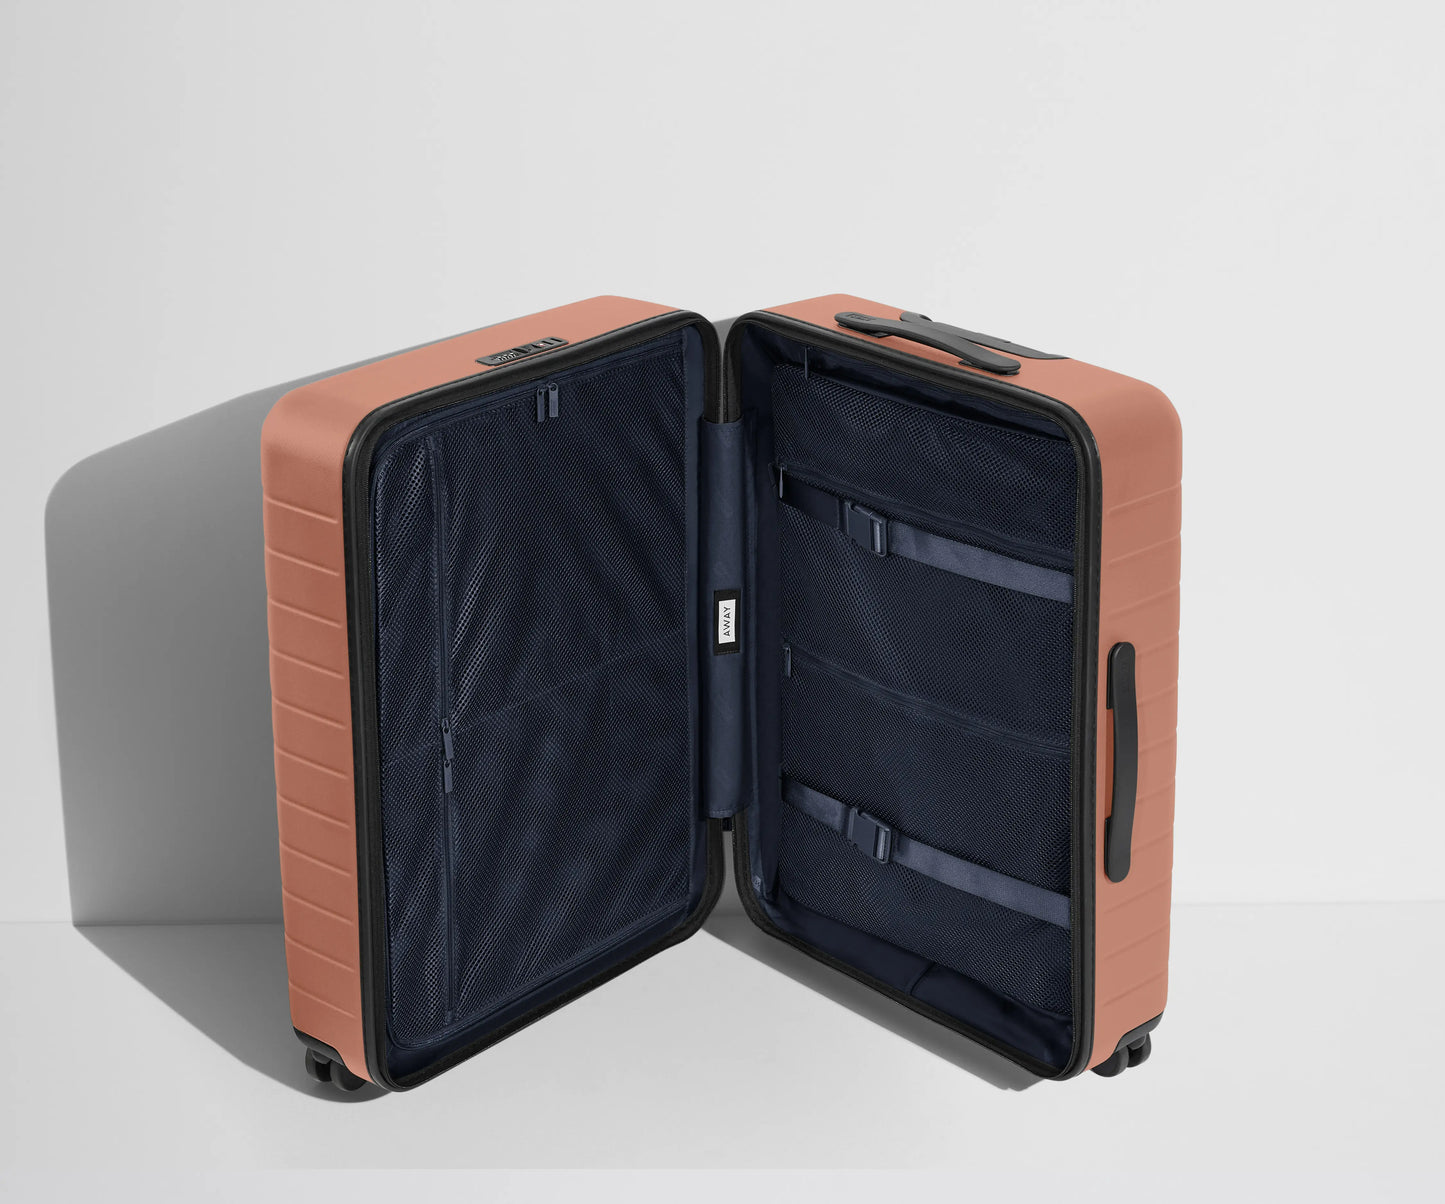 The Medium スーツケース